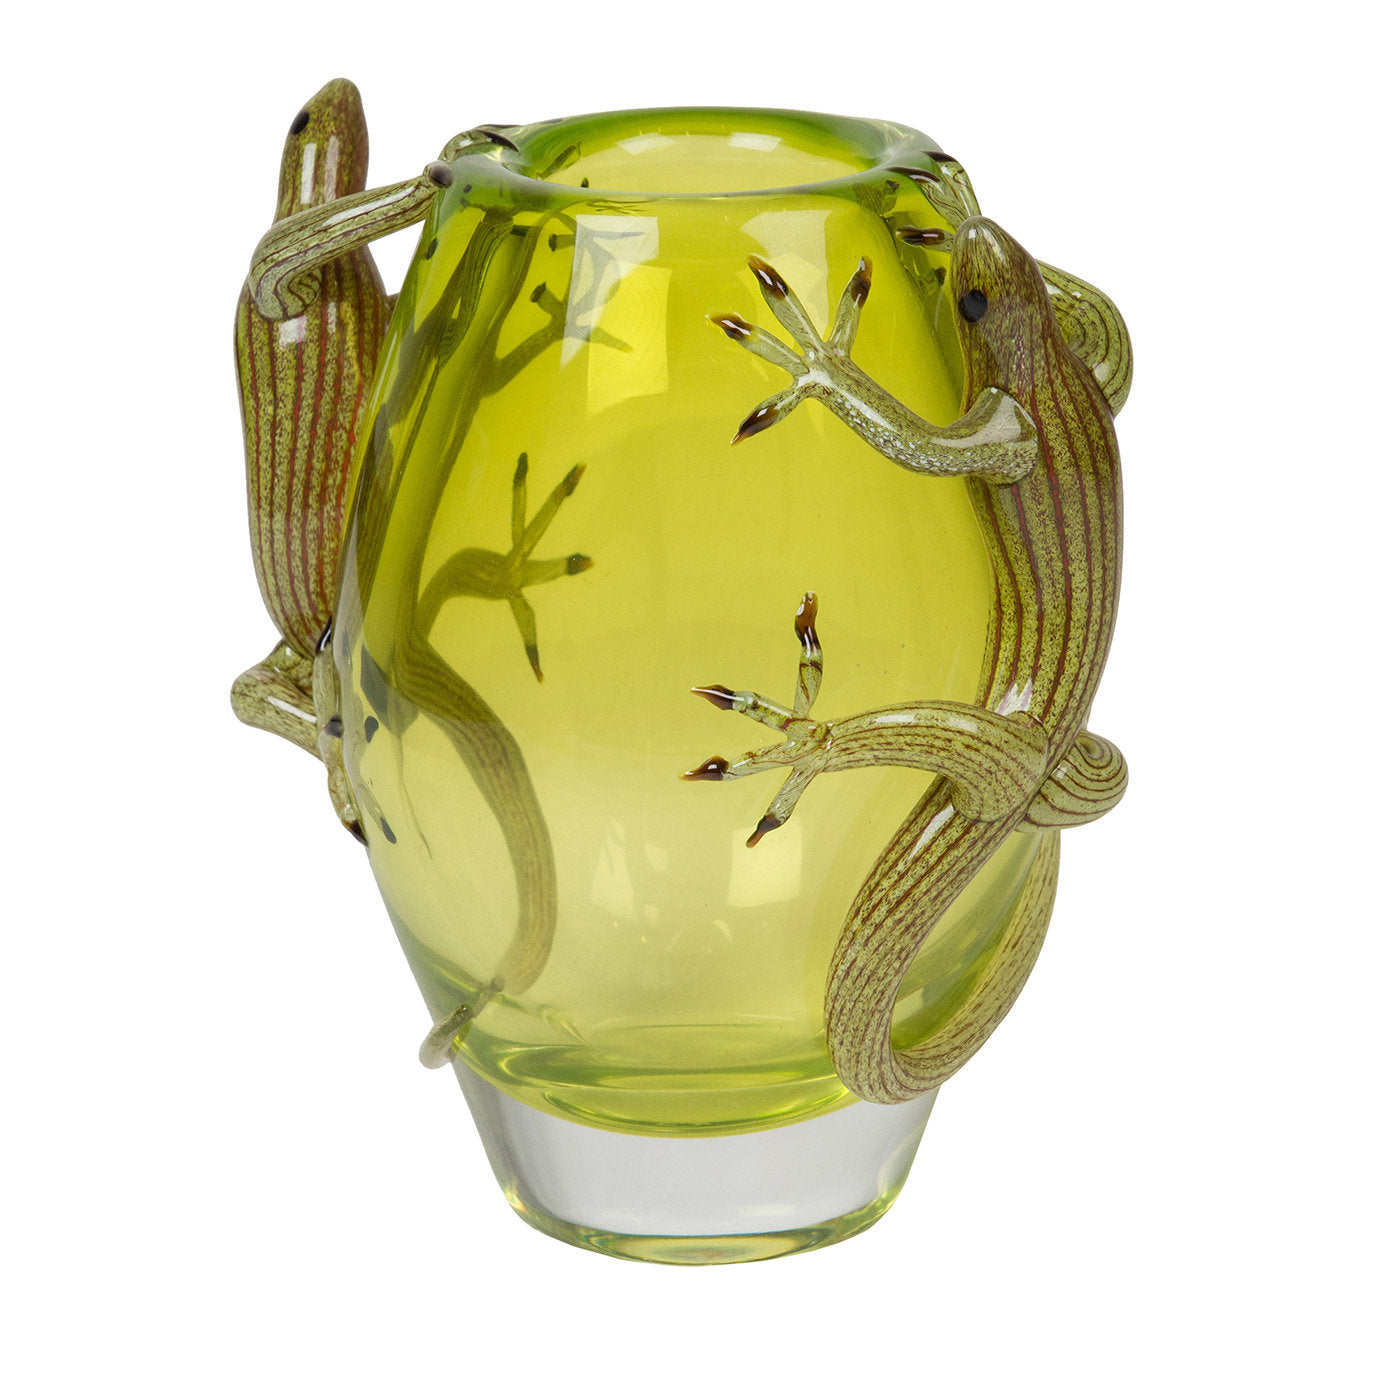 Kleine grüne Vase mit 2 Geckos  - Hauptansicht